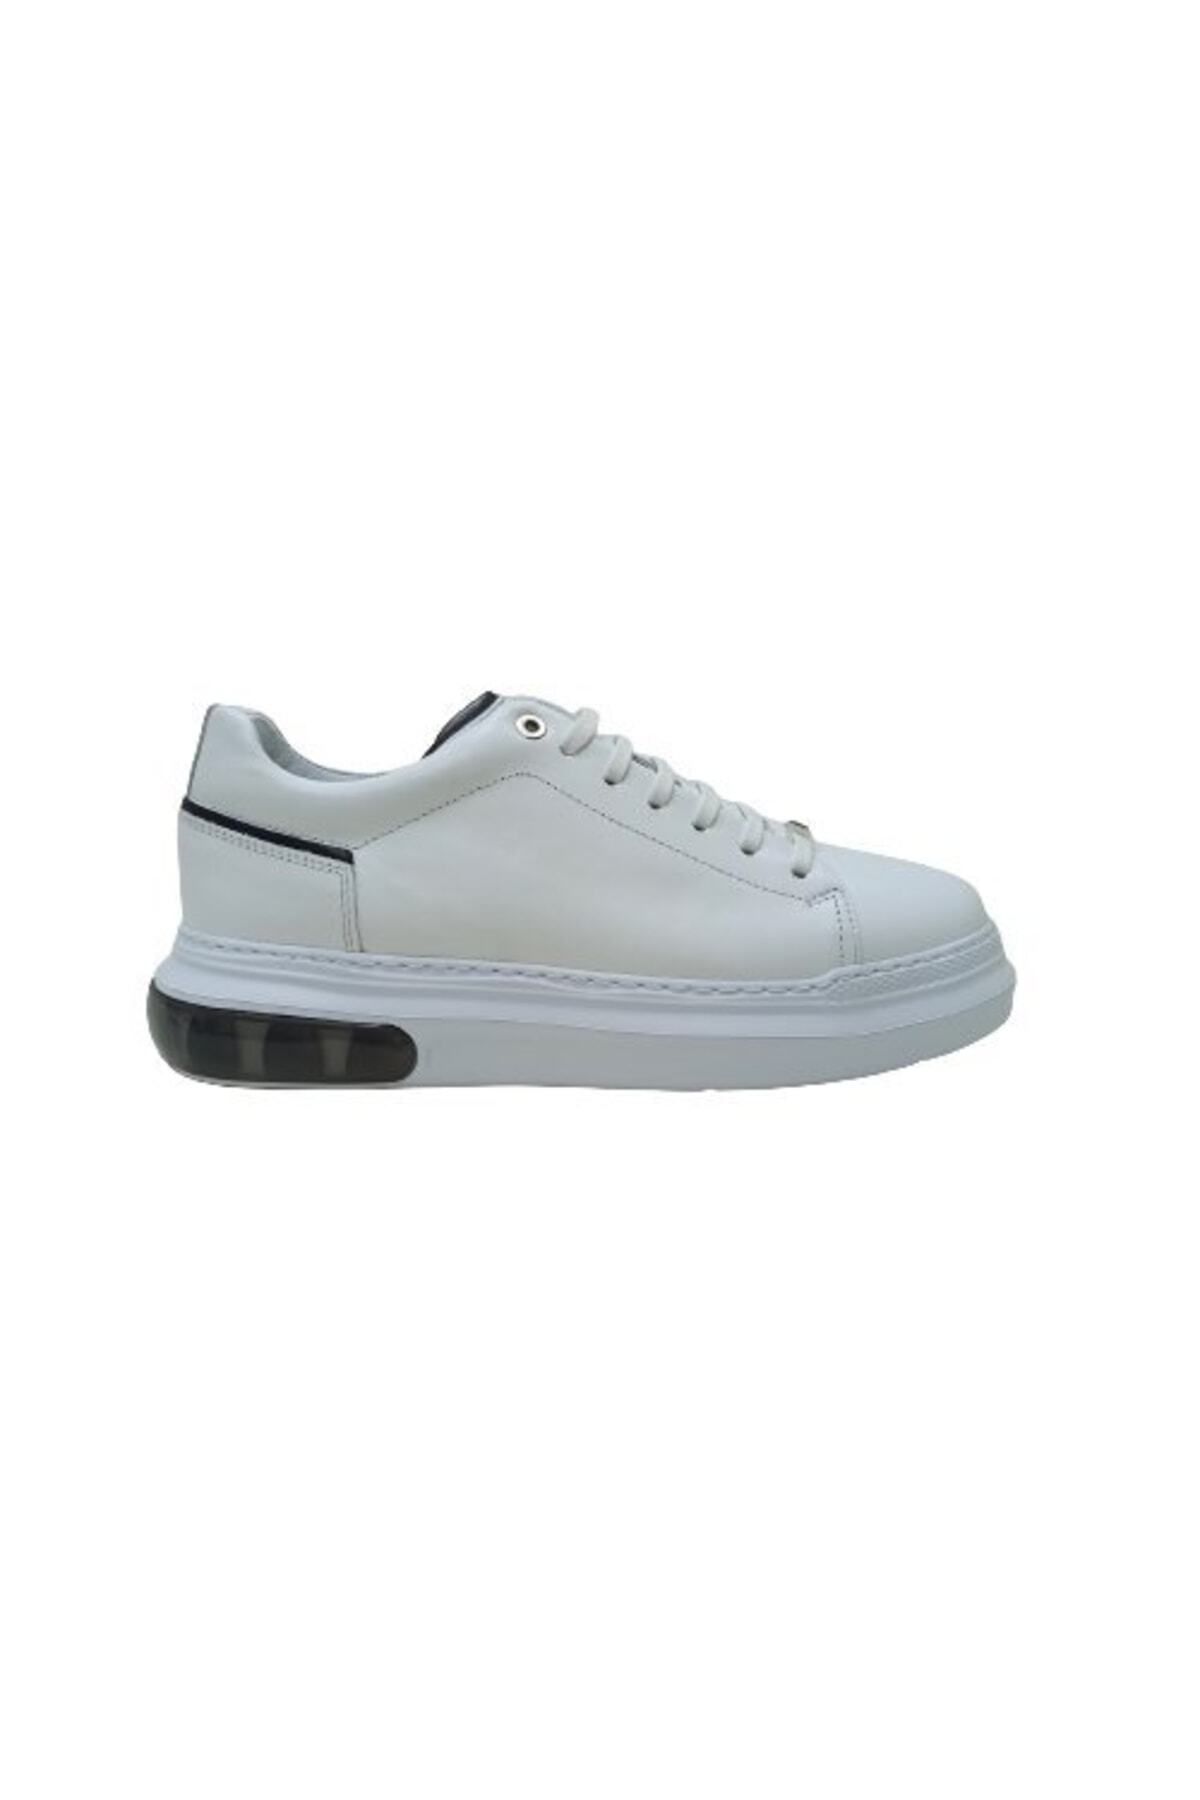 LUCIANO BELLINI Beyaz Deri Erkek Sneaker Ayakkabı